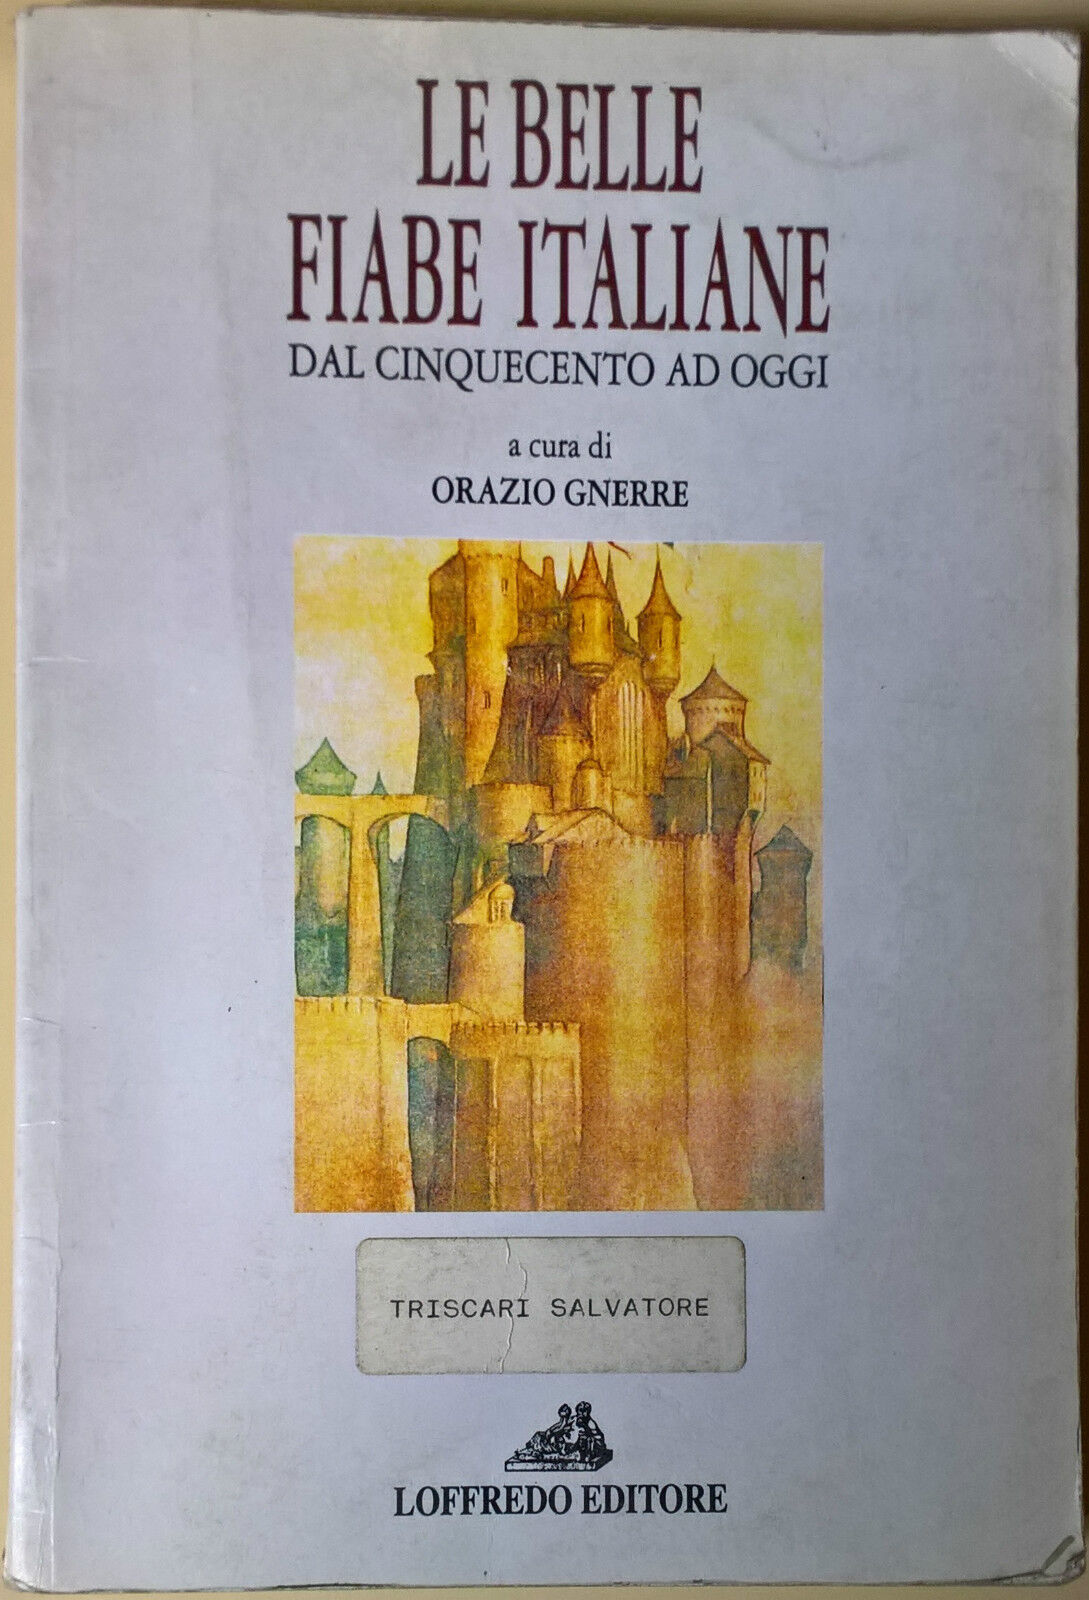 Le belle fiabe italiane dal Cinquecento ad oggi - O. Gnerre - 1995, Loffredo - L